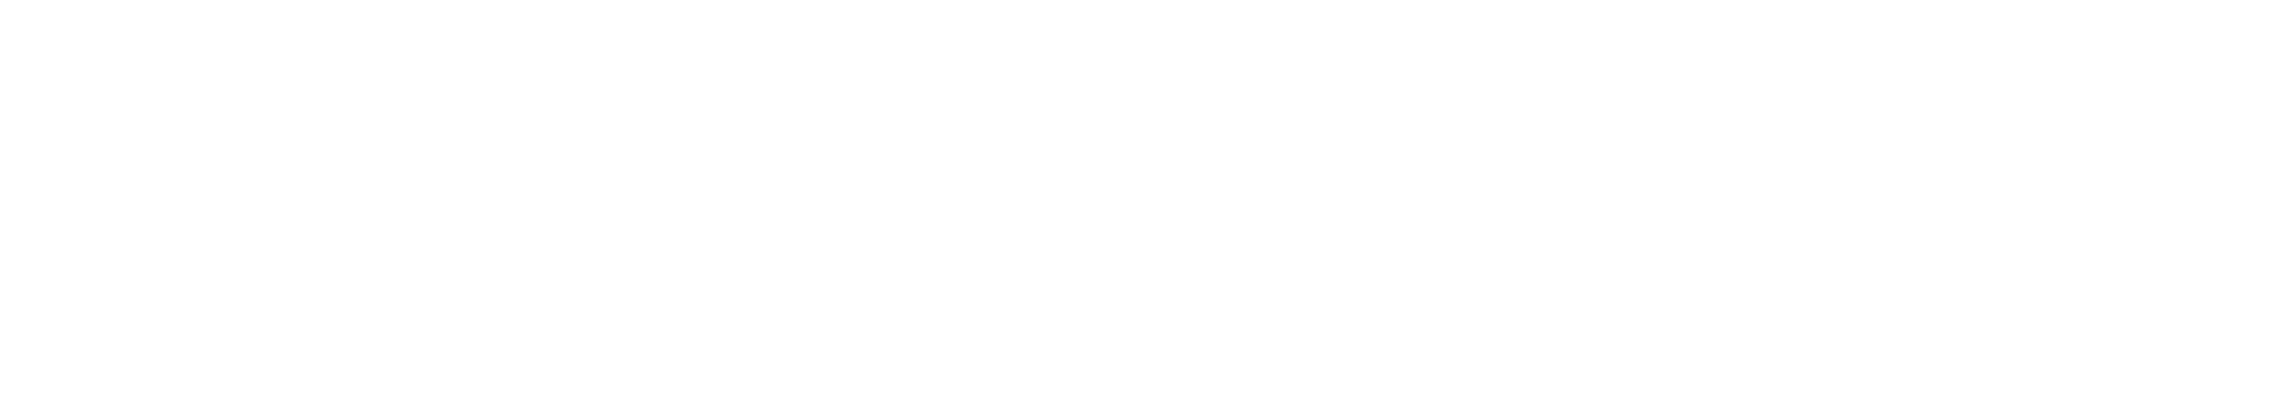 timeline of innovation